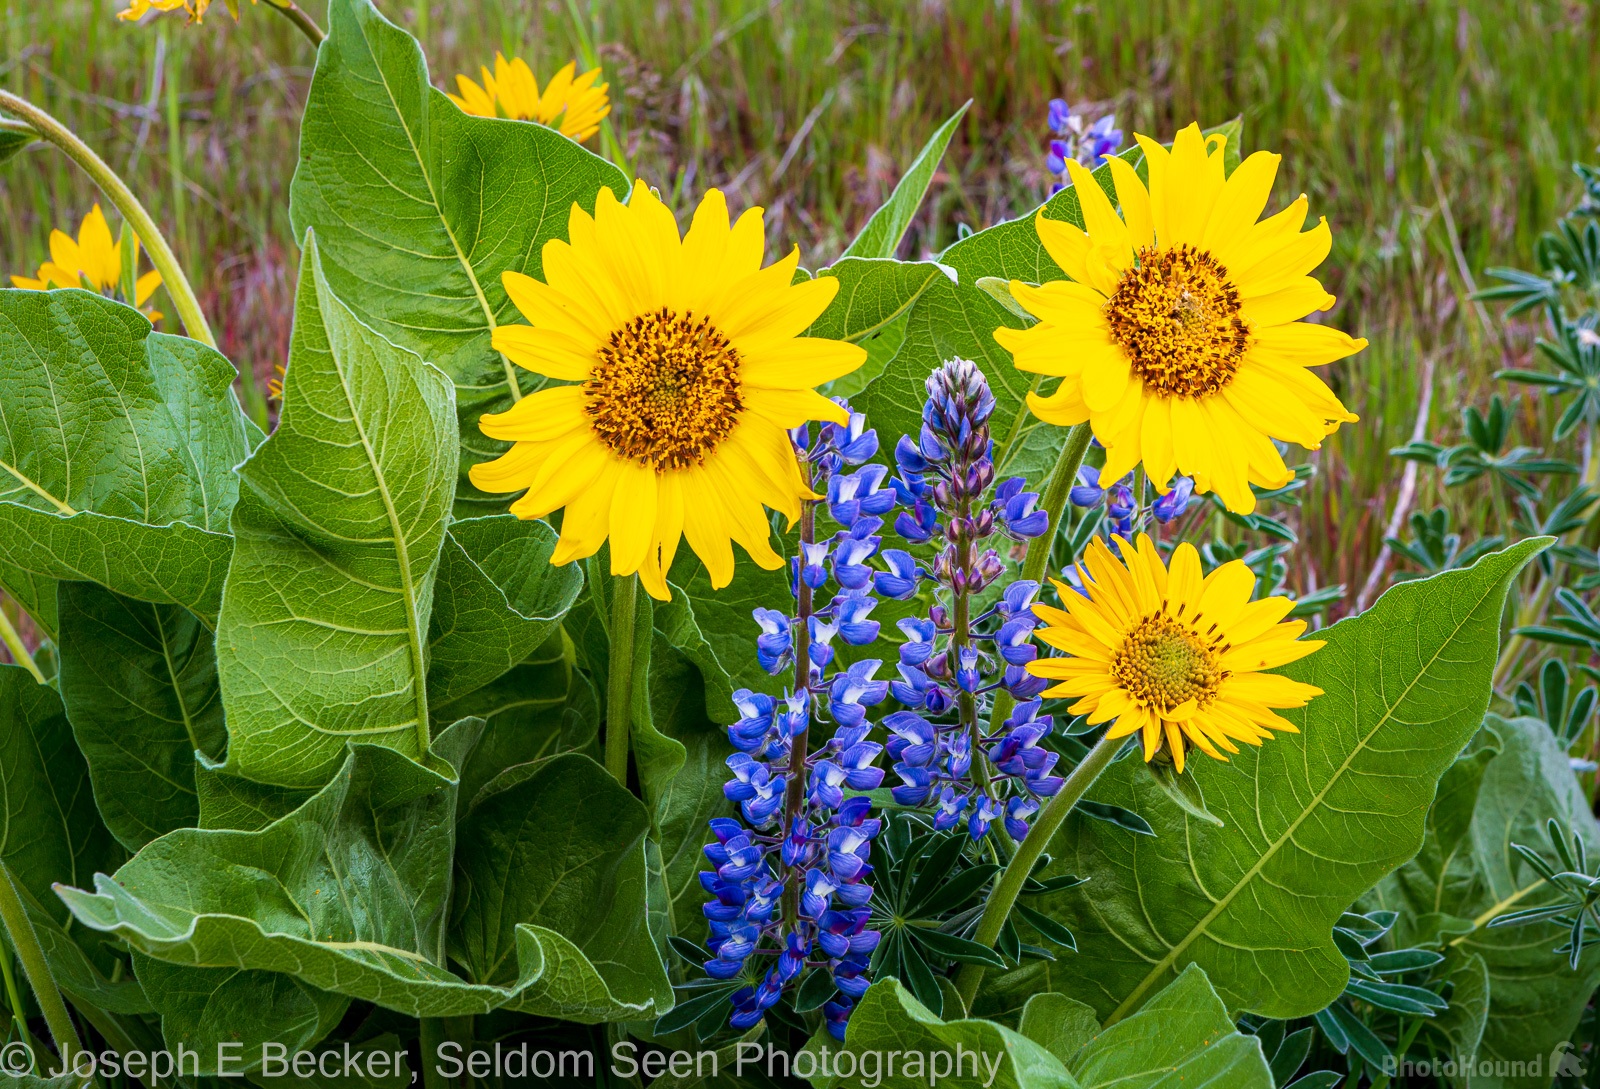 Image of Dalles Mountain Flower Fields by Joe Becker